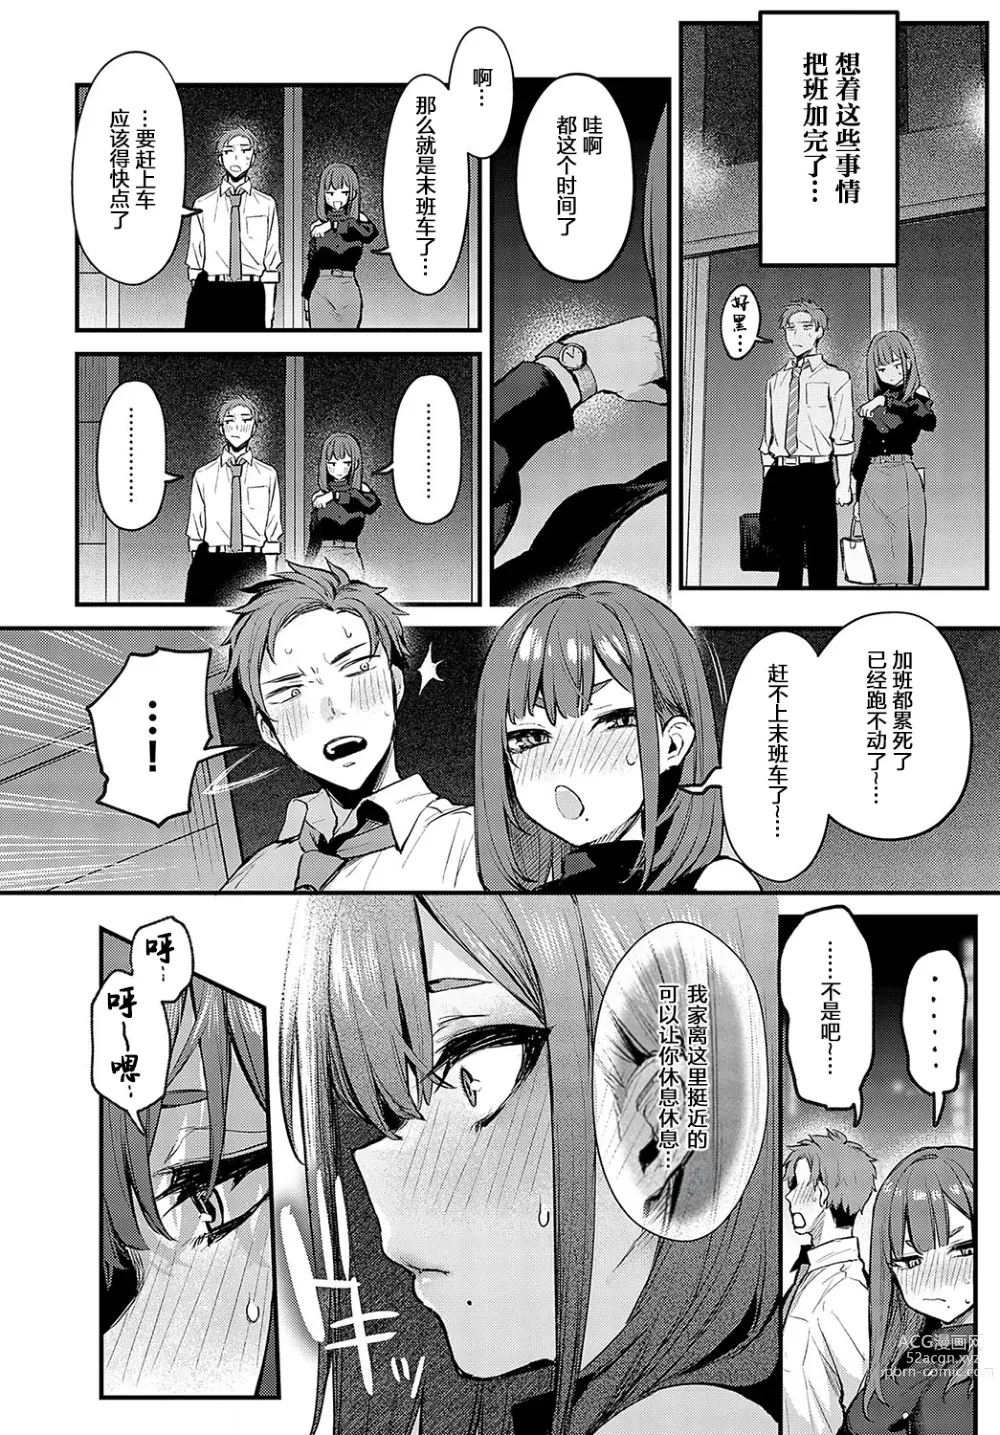 Page 12 of manga Mou Ichido, Shite Mitai. - I wana try it again.